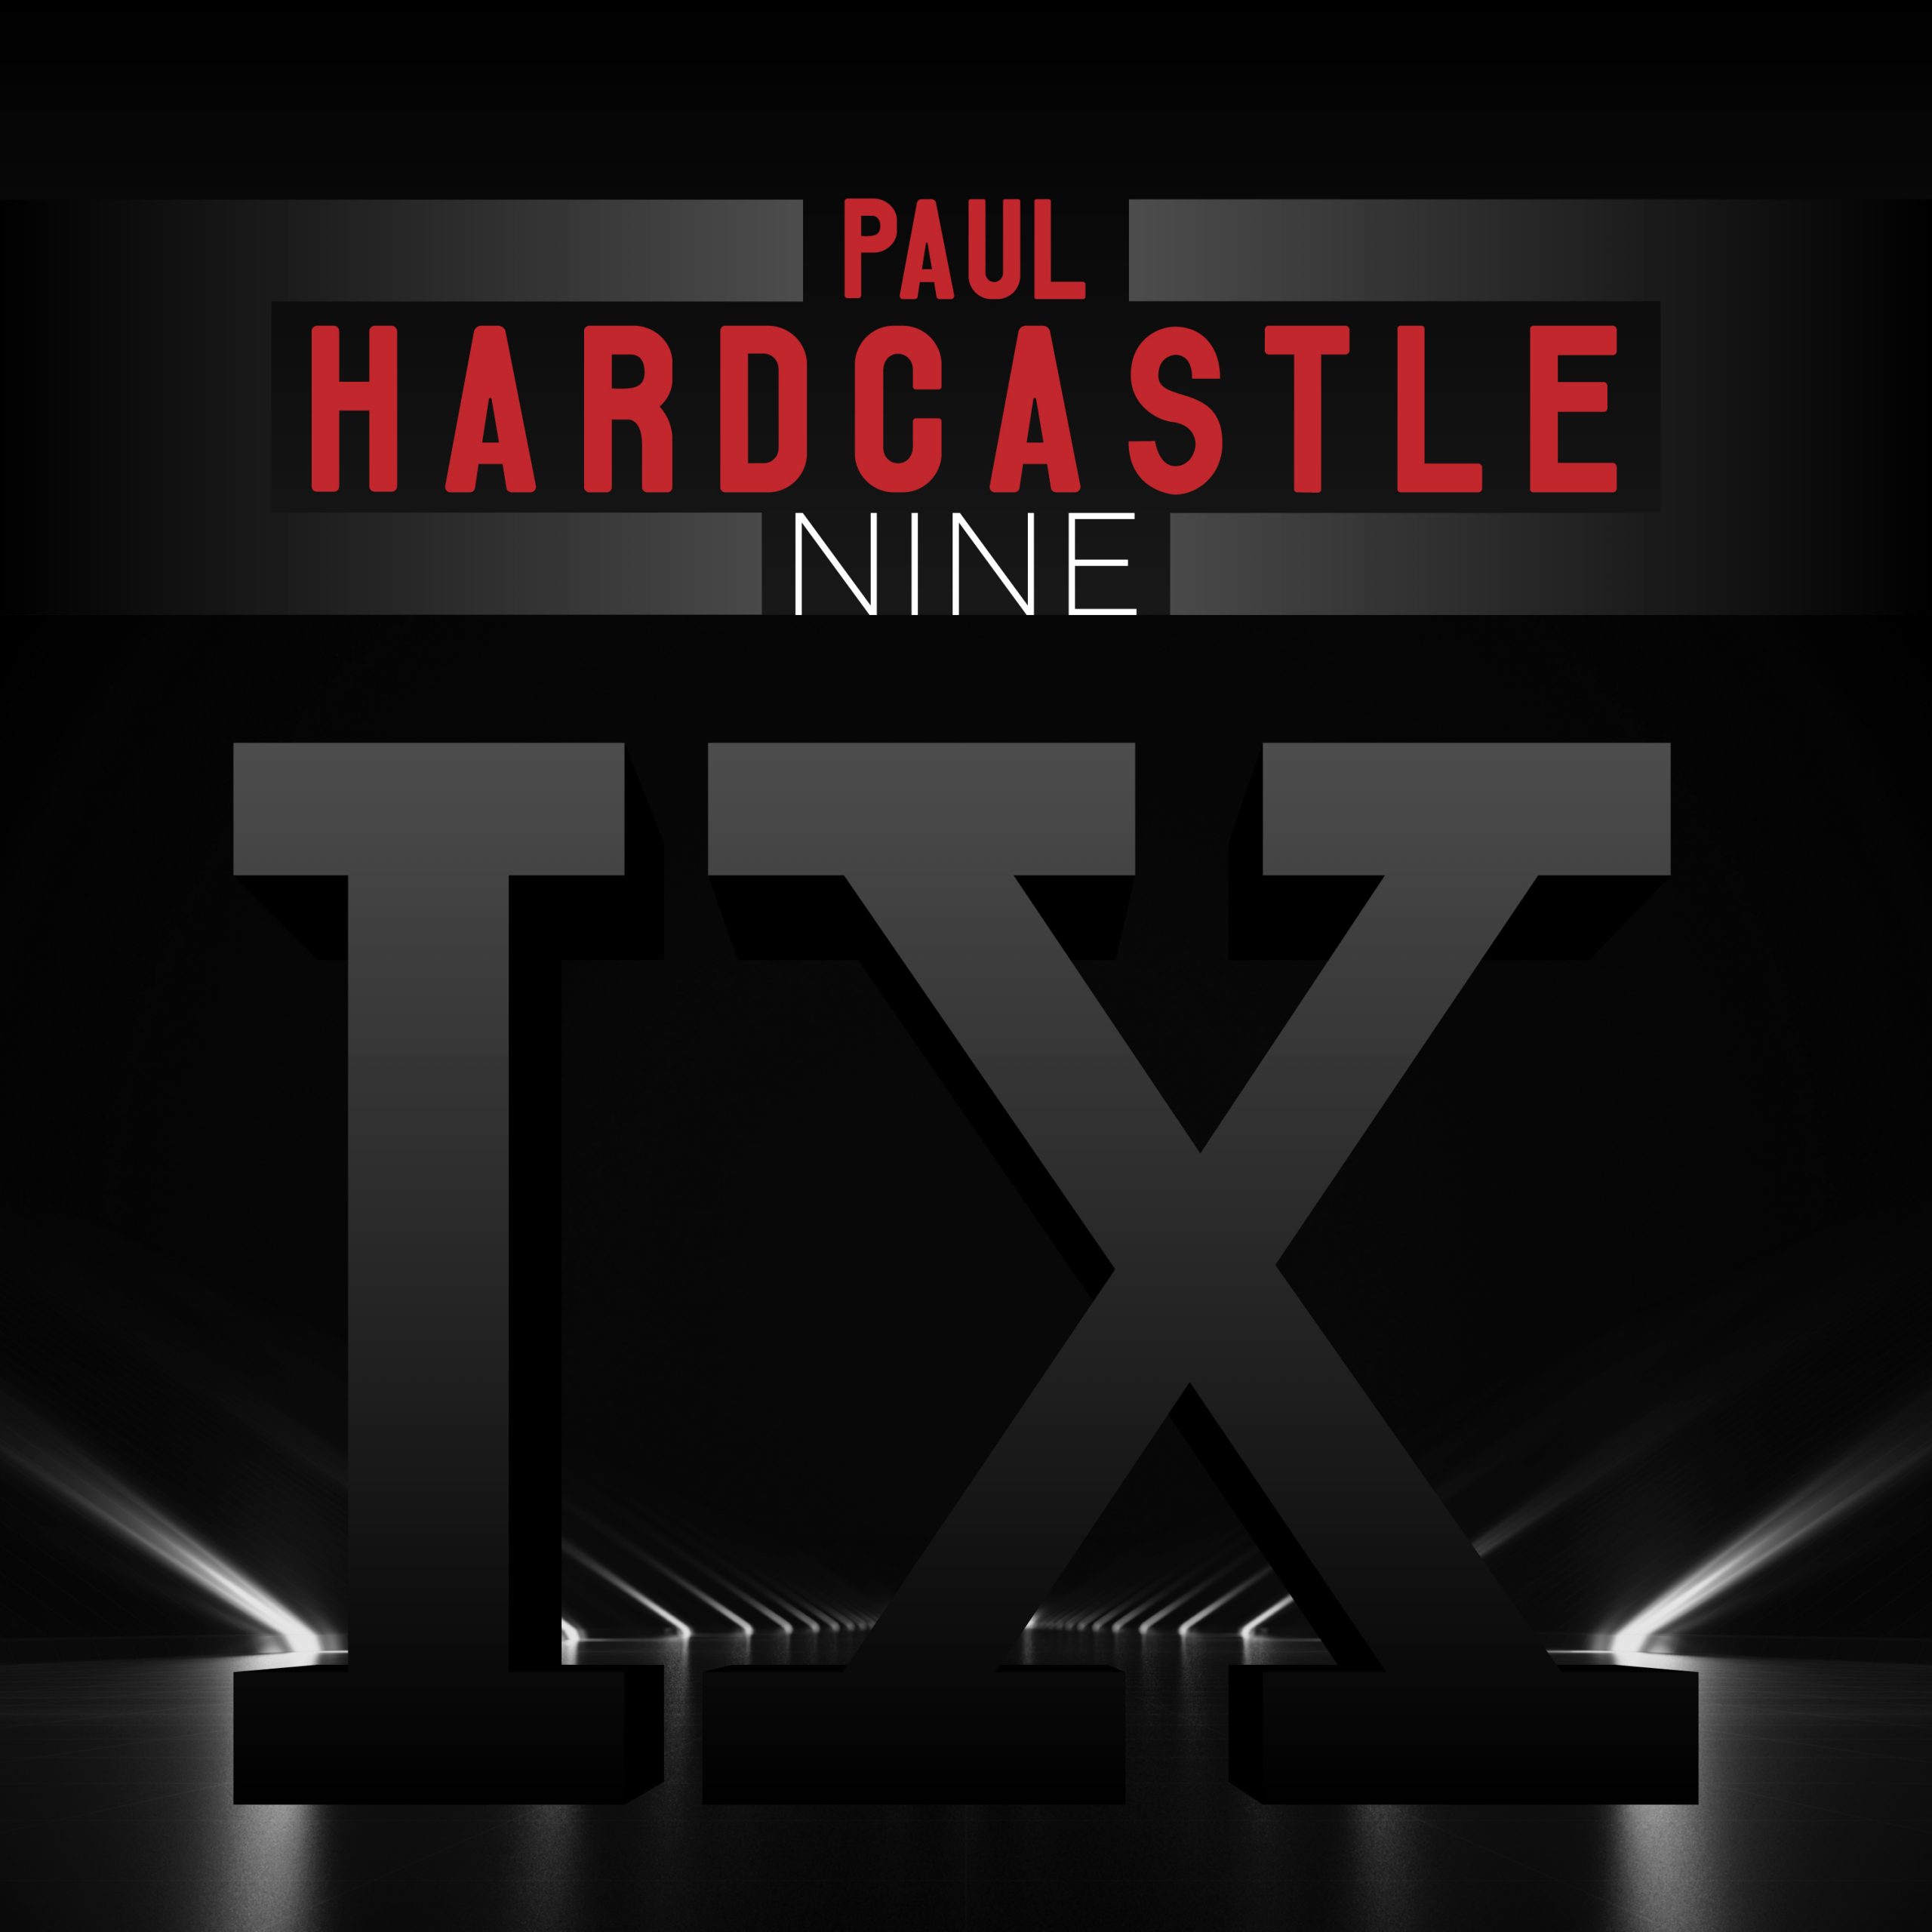 Paul hardcastle. Paul Hardcastle - Hardcastle. Paul Hardcastle - Hardcastle 2. Paul Hardcastle Hardcastle 5. Paul Hardcastle Hardcastle 4.